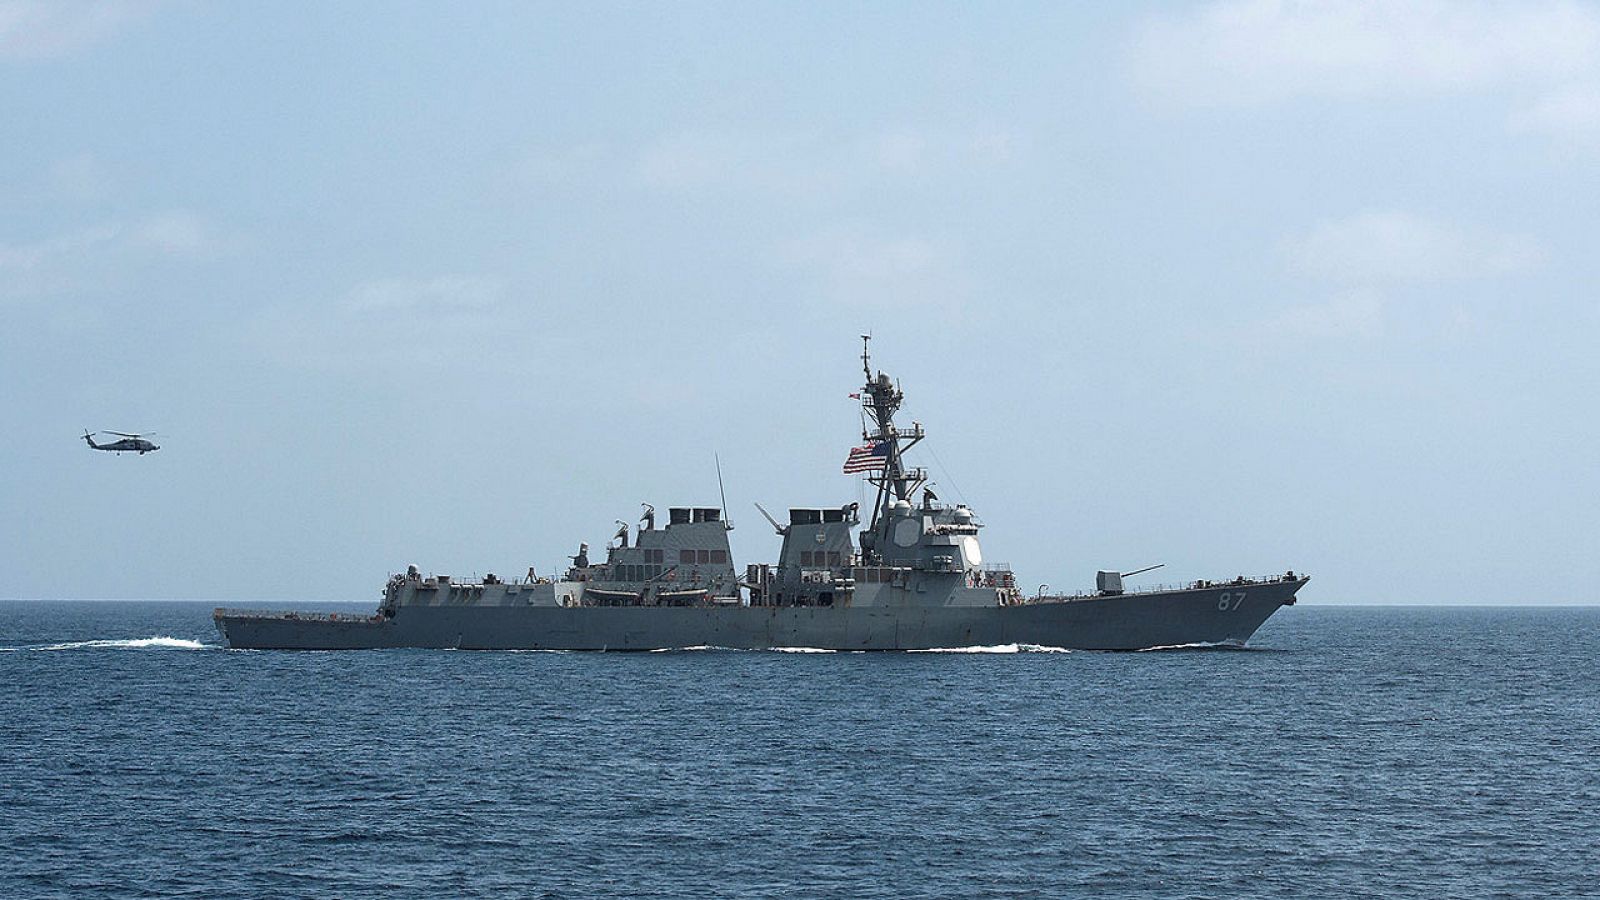 Imagen de archivo del destructor estadounidense USS Mason, supuestamente atacado por los rebeldes hutíes frente a la costa de Yemen